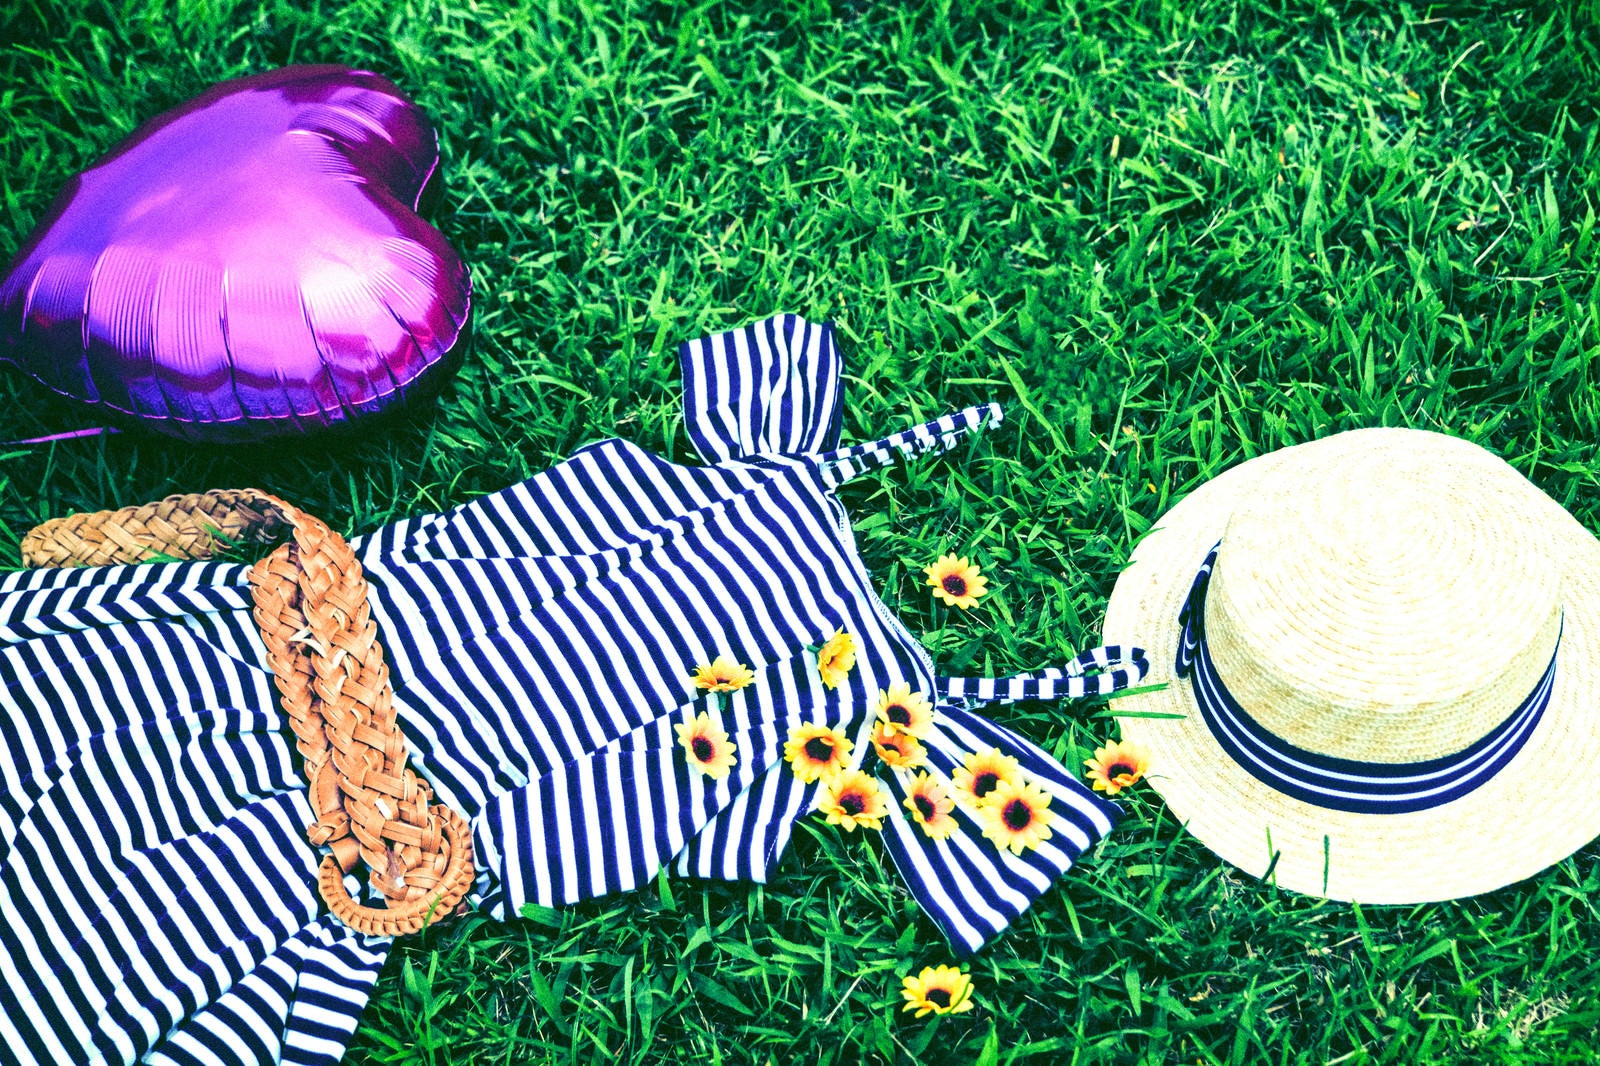 「麦わら帽子と女子の夏服」の写真